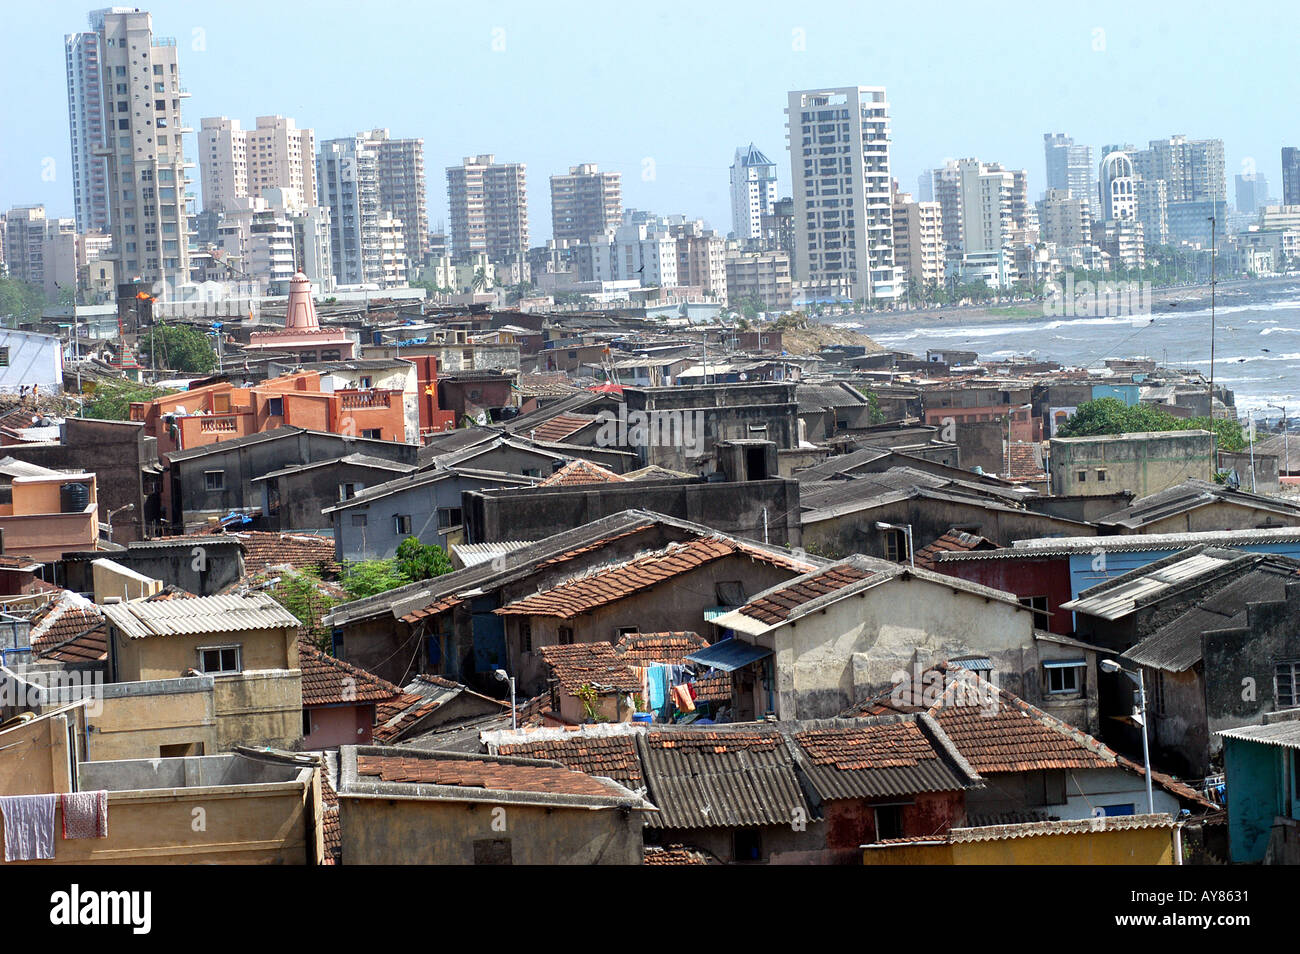 Paysage urbain indien, contraste riche et médiocre, logement, gratte-ciels riches et bidonvilles du village de Worli, Bombay, Mumbai, Inde dpa 251 asb Banque D'Images